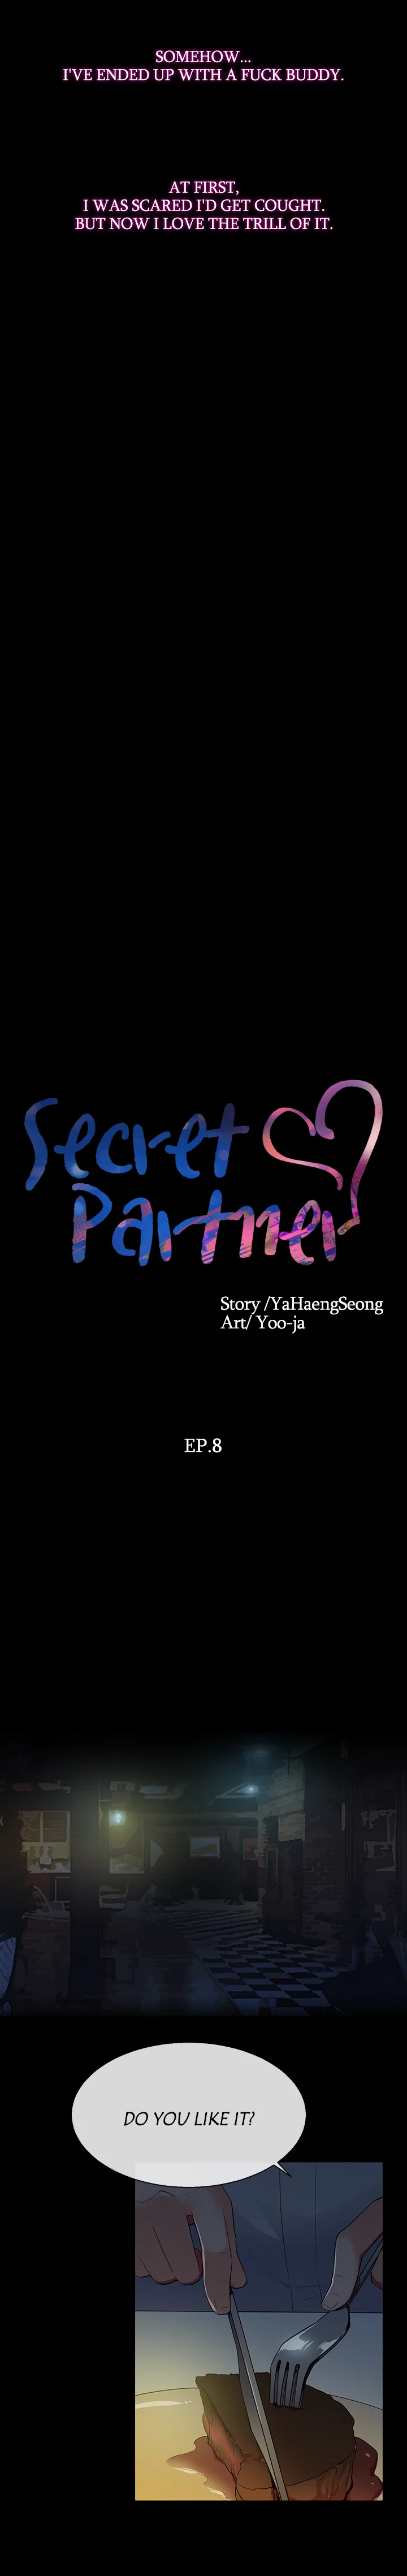 Secret Partner - Chapter 8 Page 8